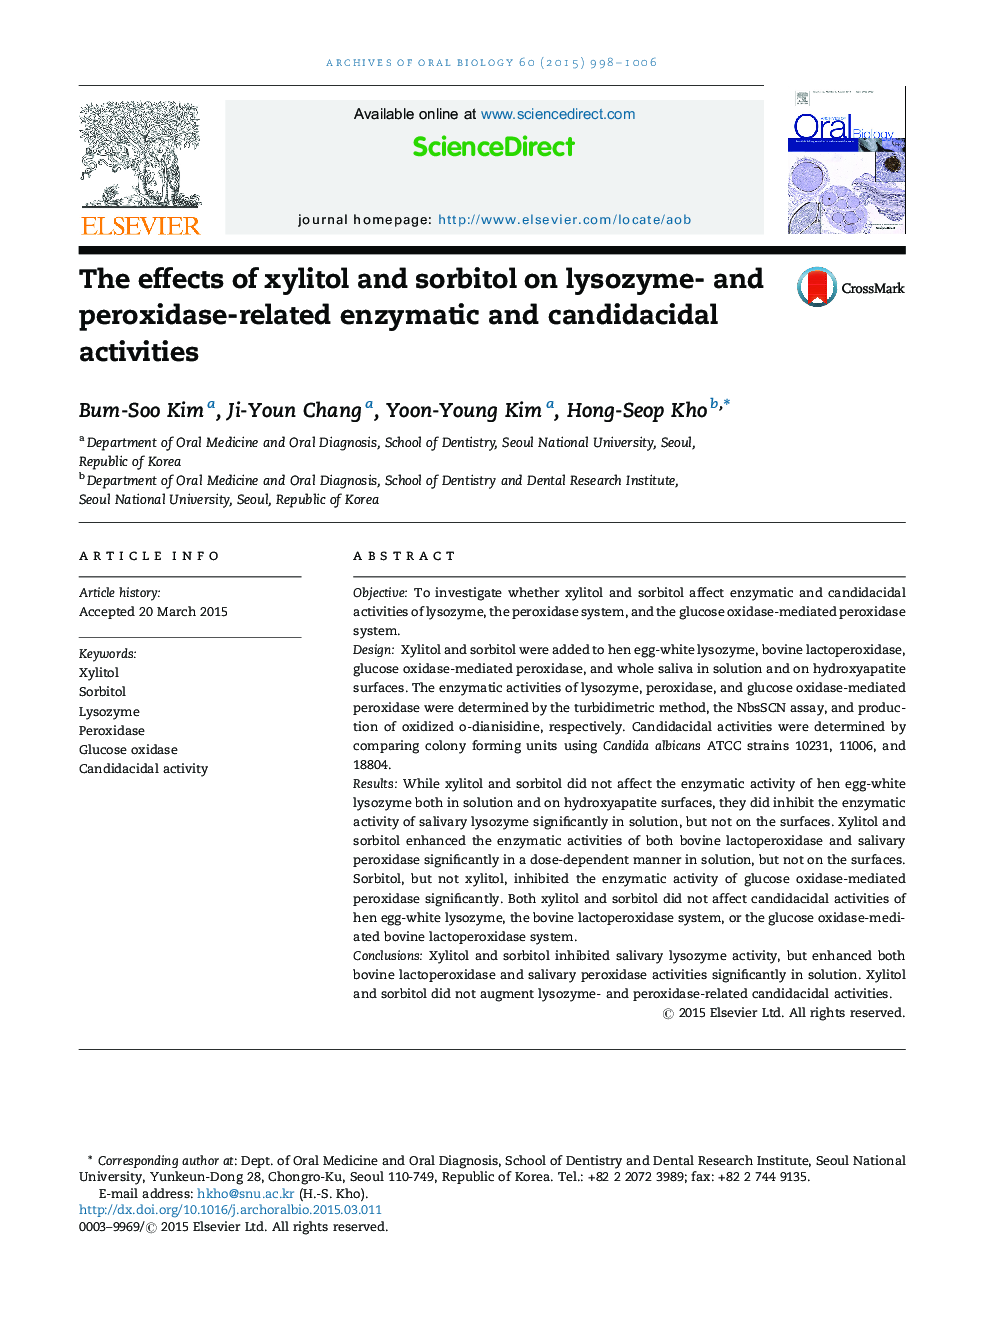 اثرات زایلیتول و سوربیتول بر فعالیت های آنزیمی و کینیدیسیاسید مرتبط با لیزوزیم و پراکسیداز 